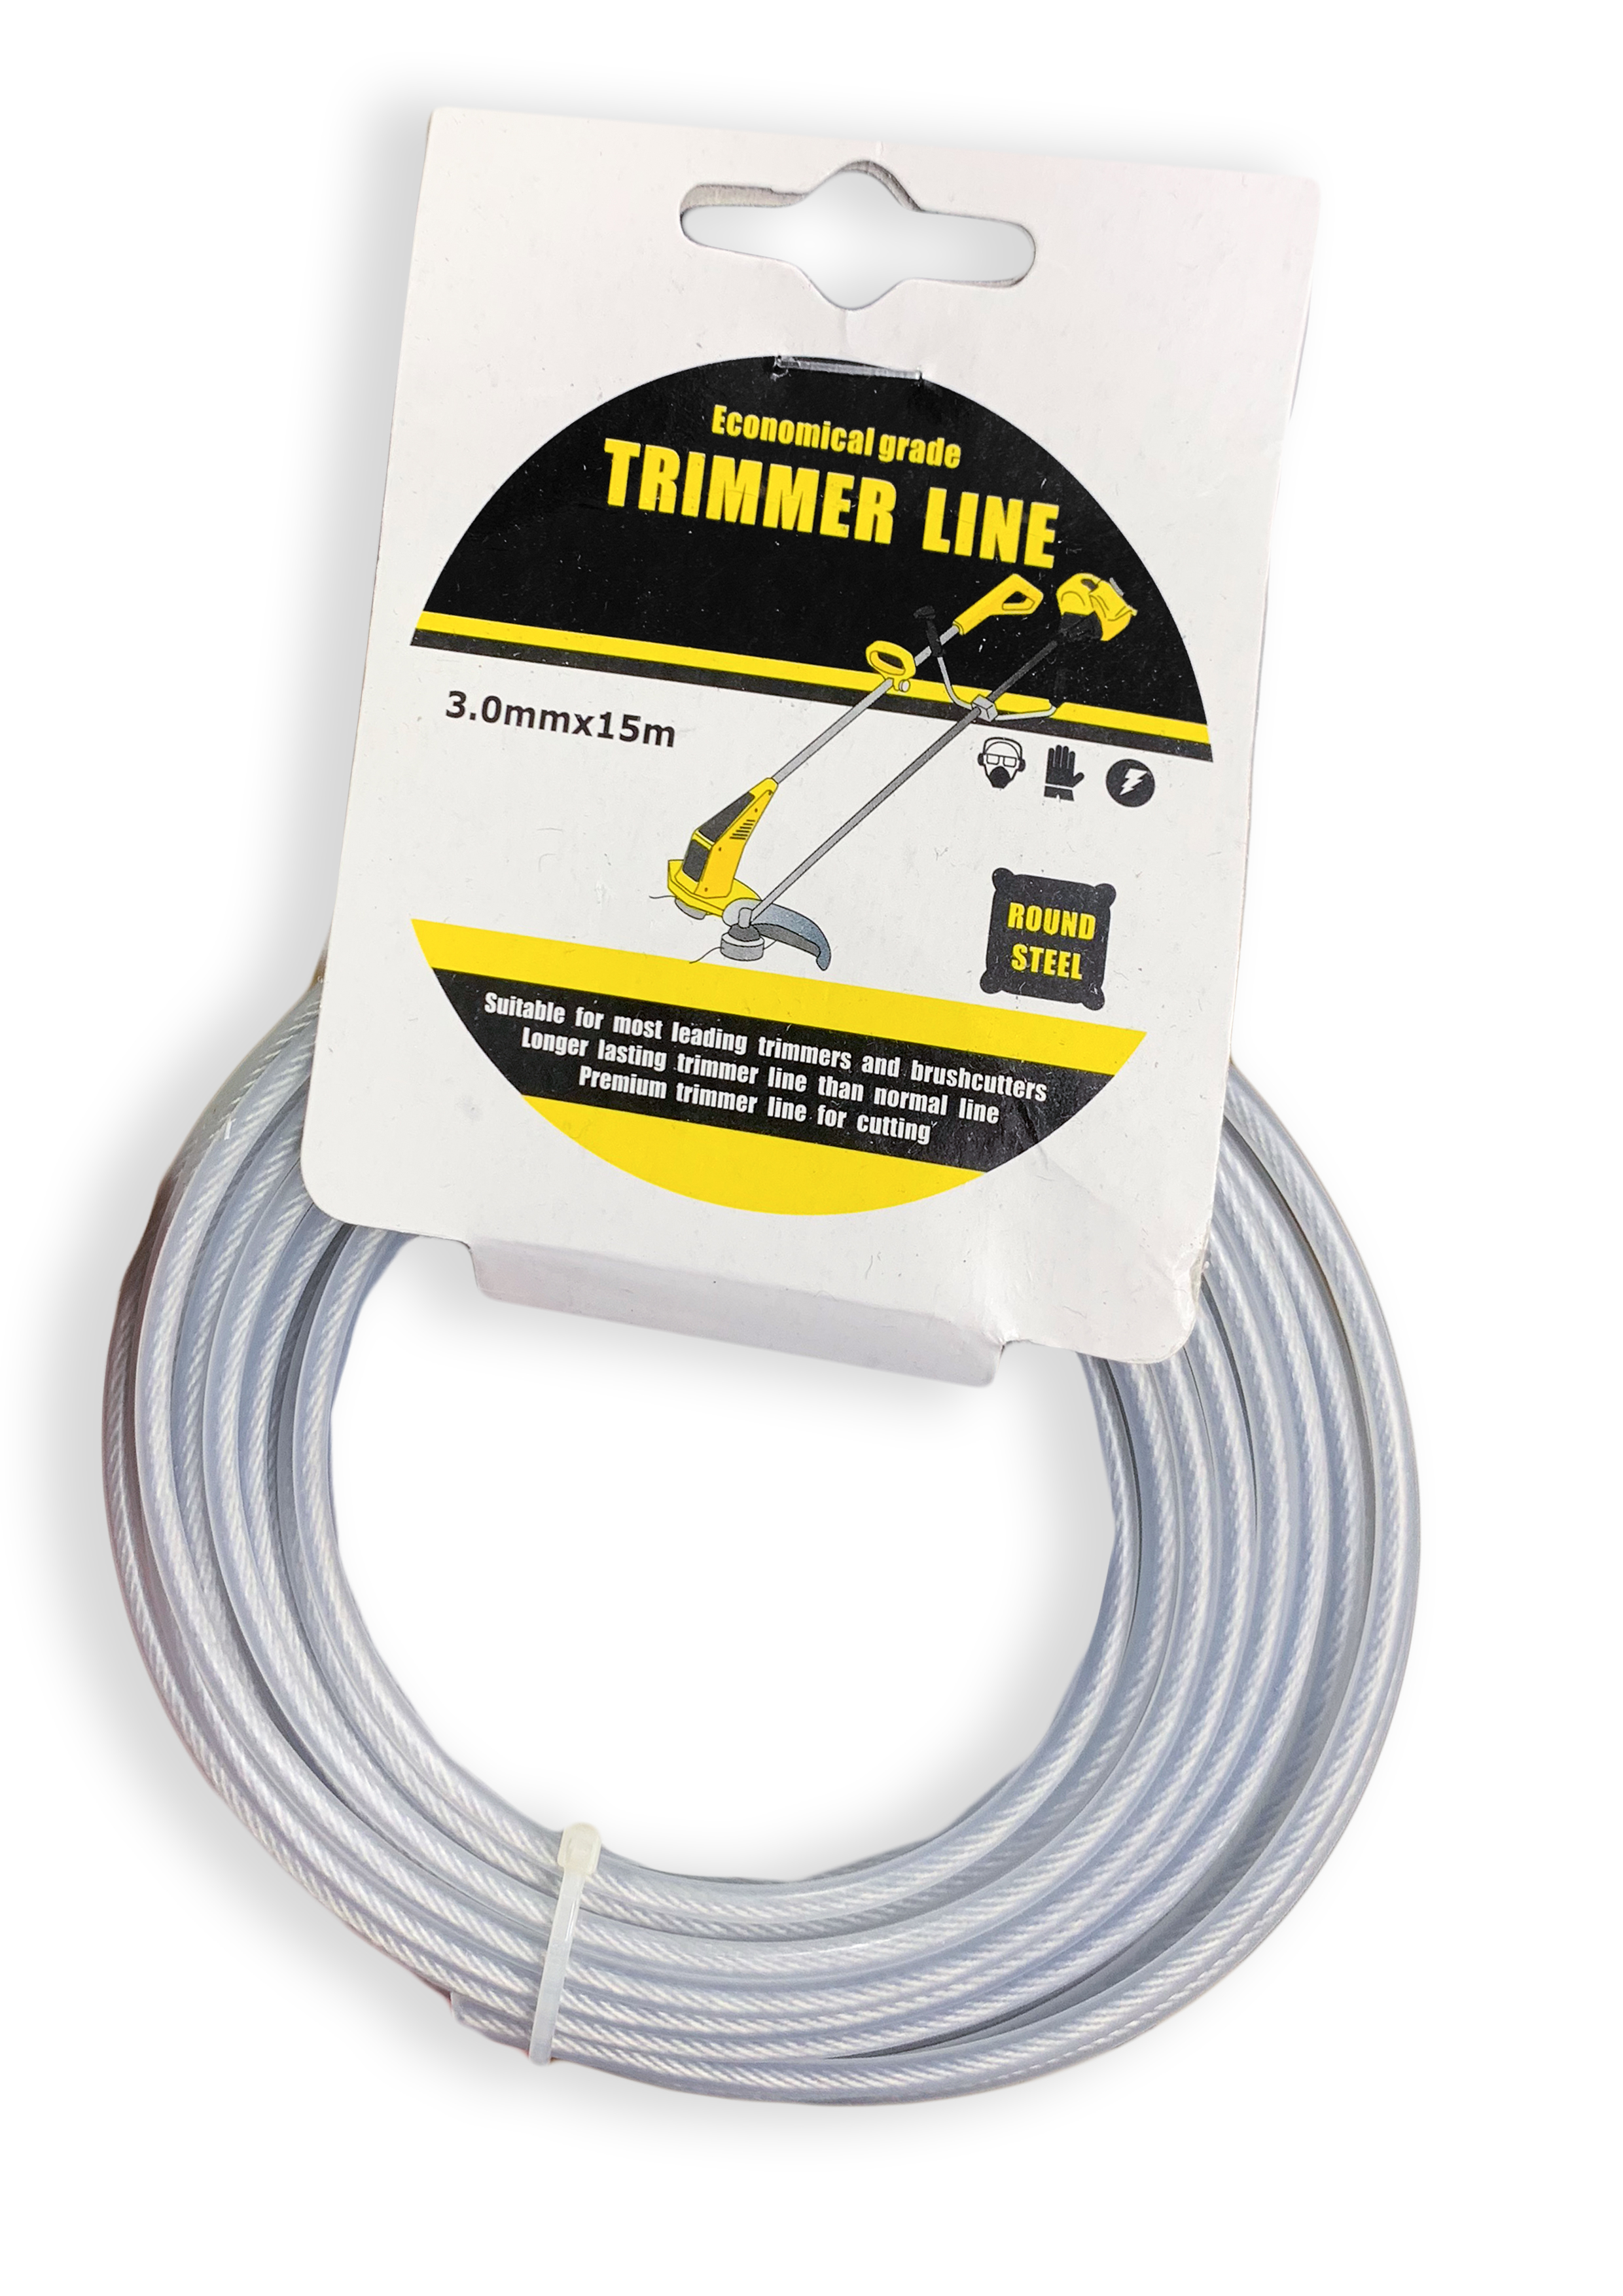 STEEL Trimmer line for Brush cutter / Grass Cutter 15M roll